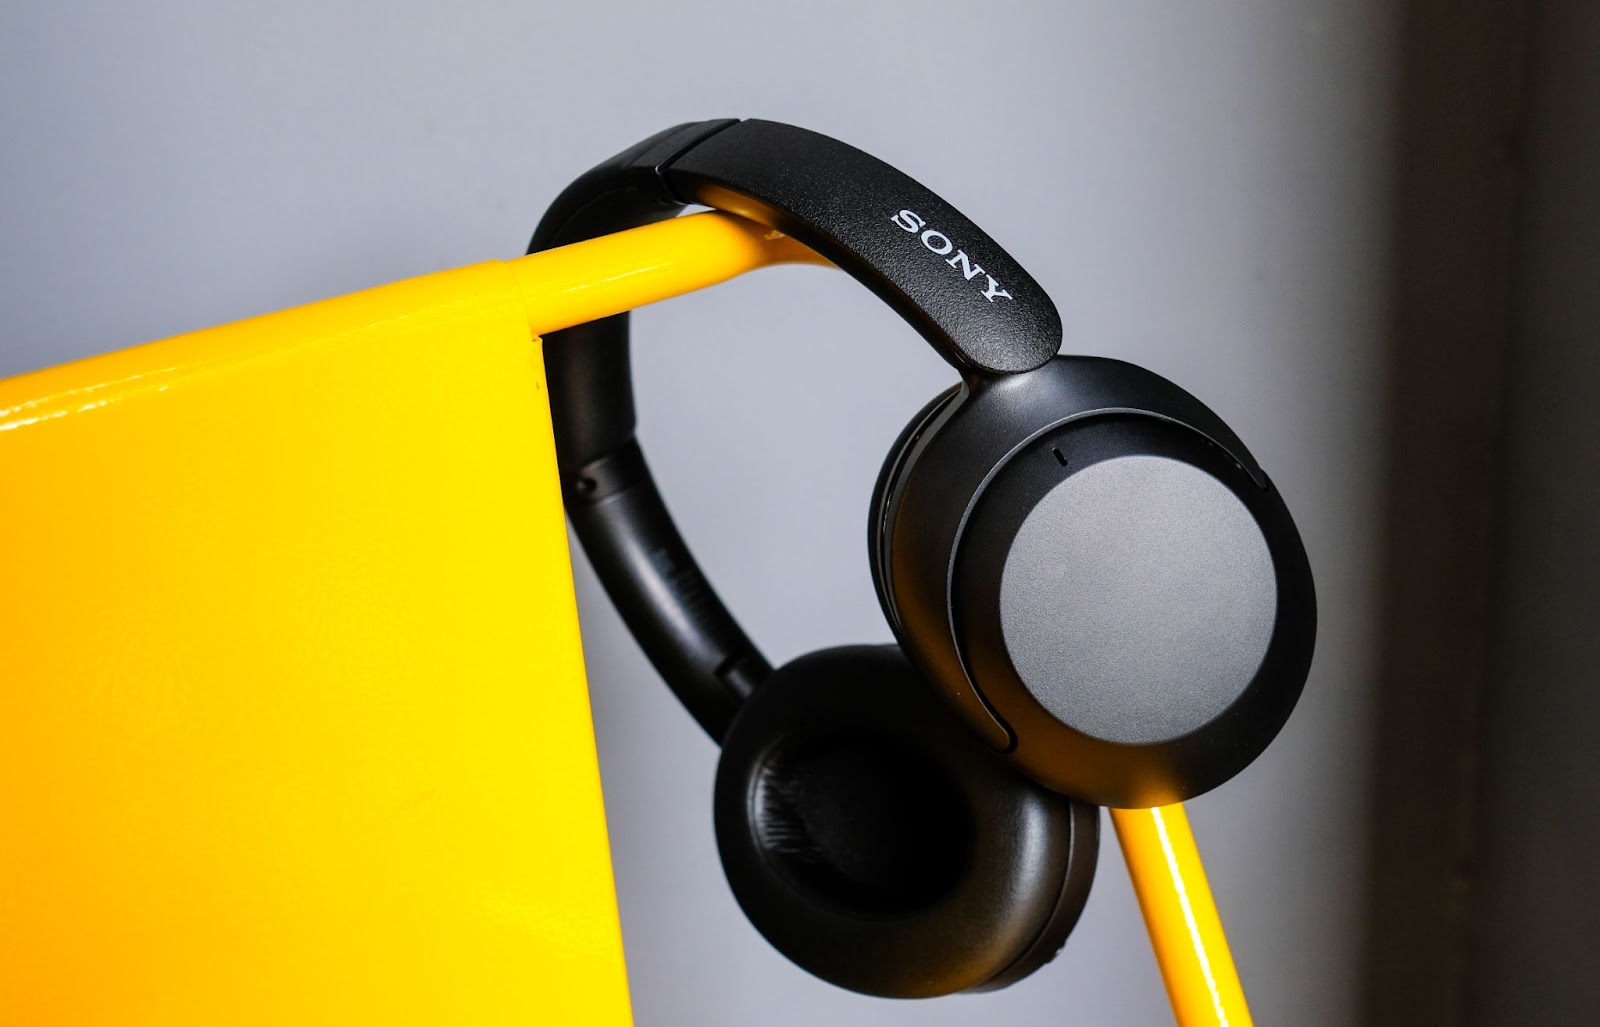 Đánh giá tai nghe Sony WH-XB910N: Bass mạnh, chống ồn tốt, giá dưới 5 triệu đồng - Ảnh 2.